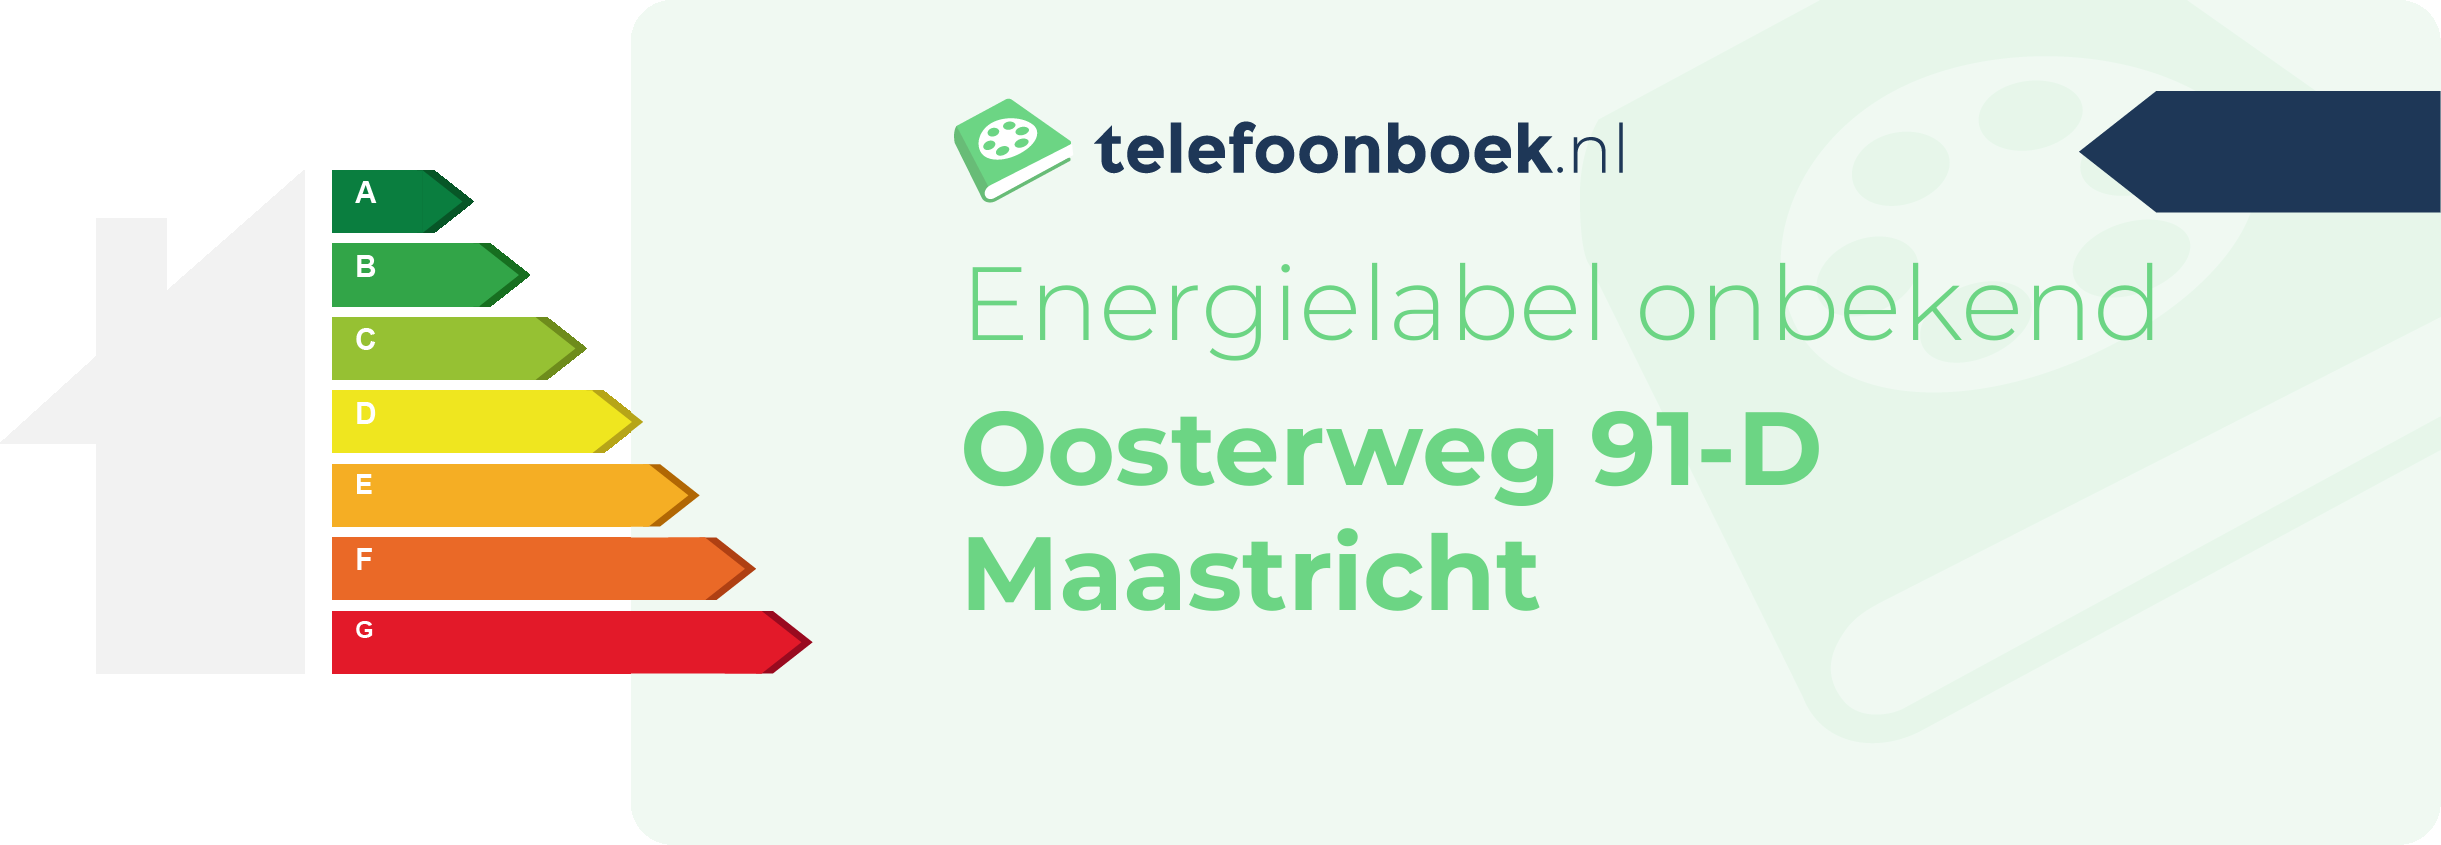 Energielabel Oosterweg 91-D Maastricht